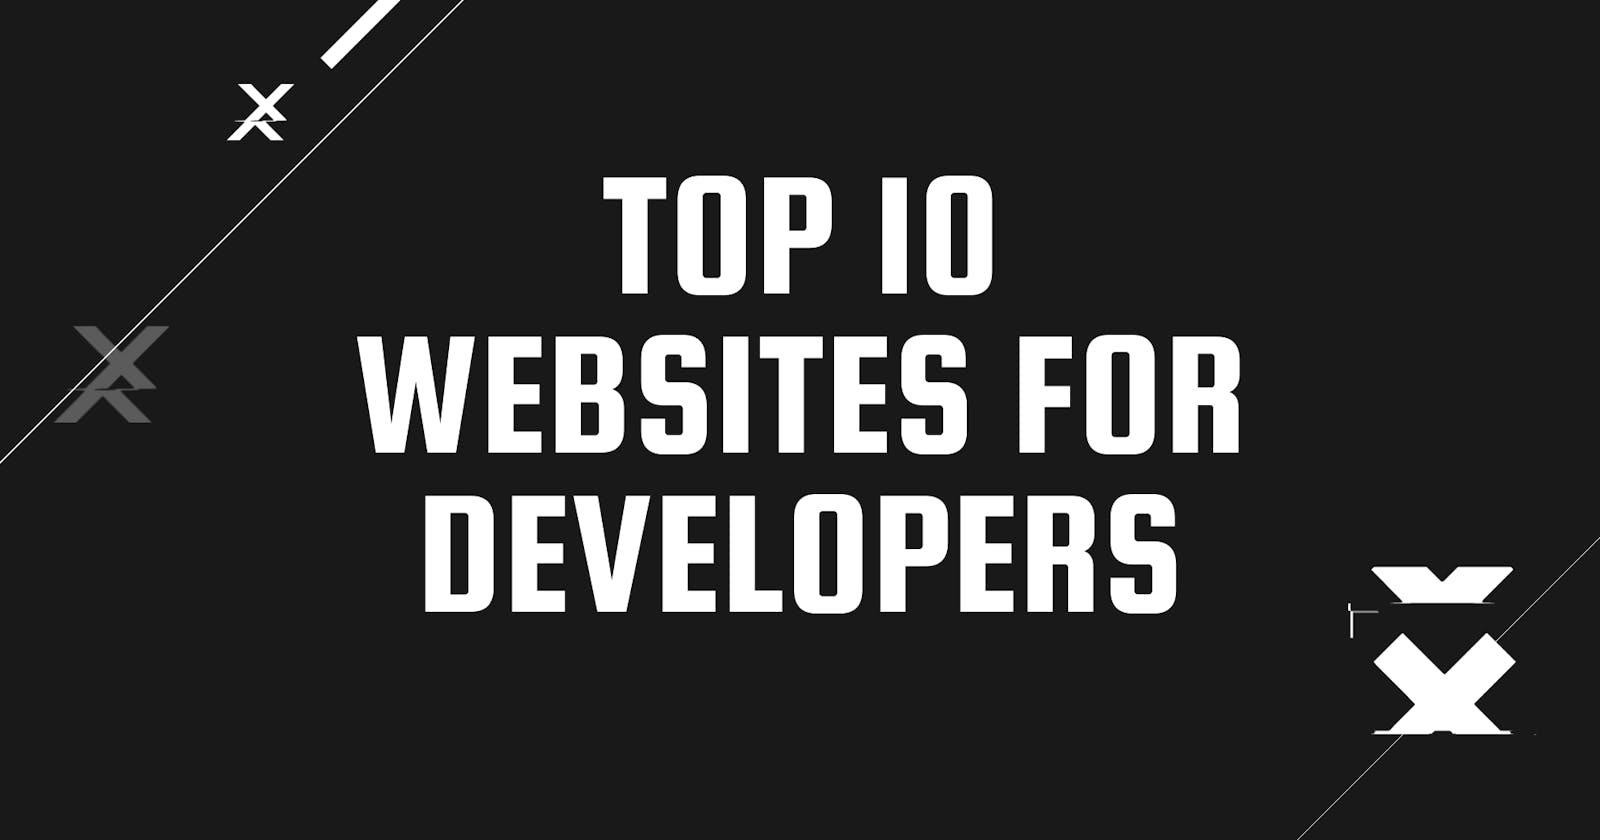 Top 10 Websites For Developers